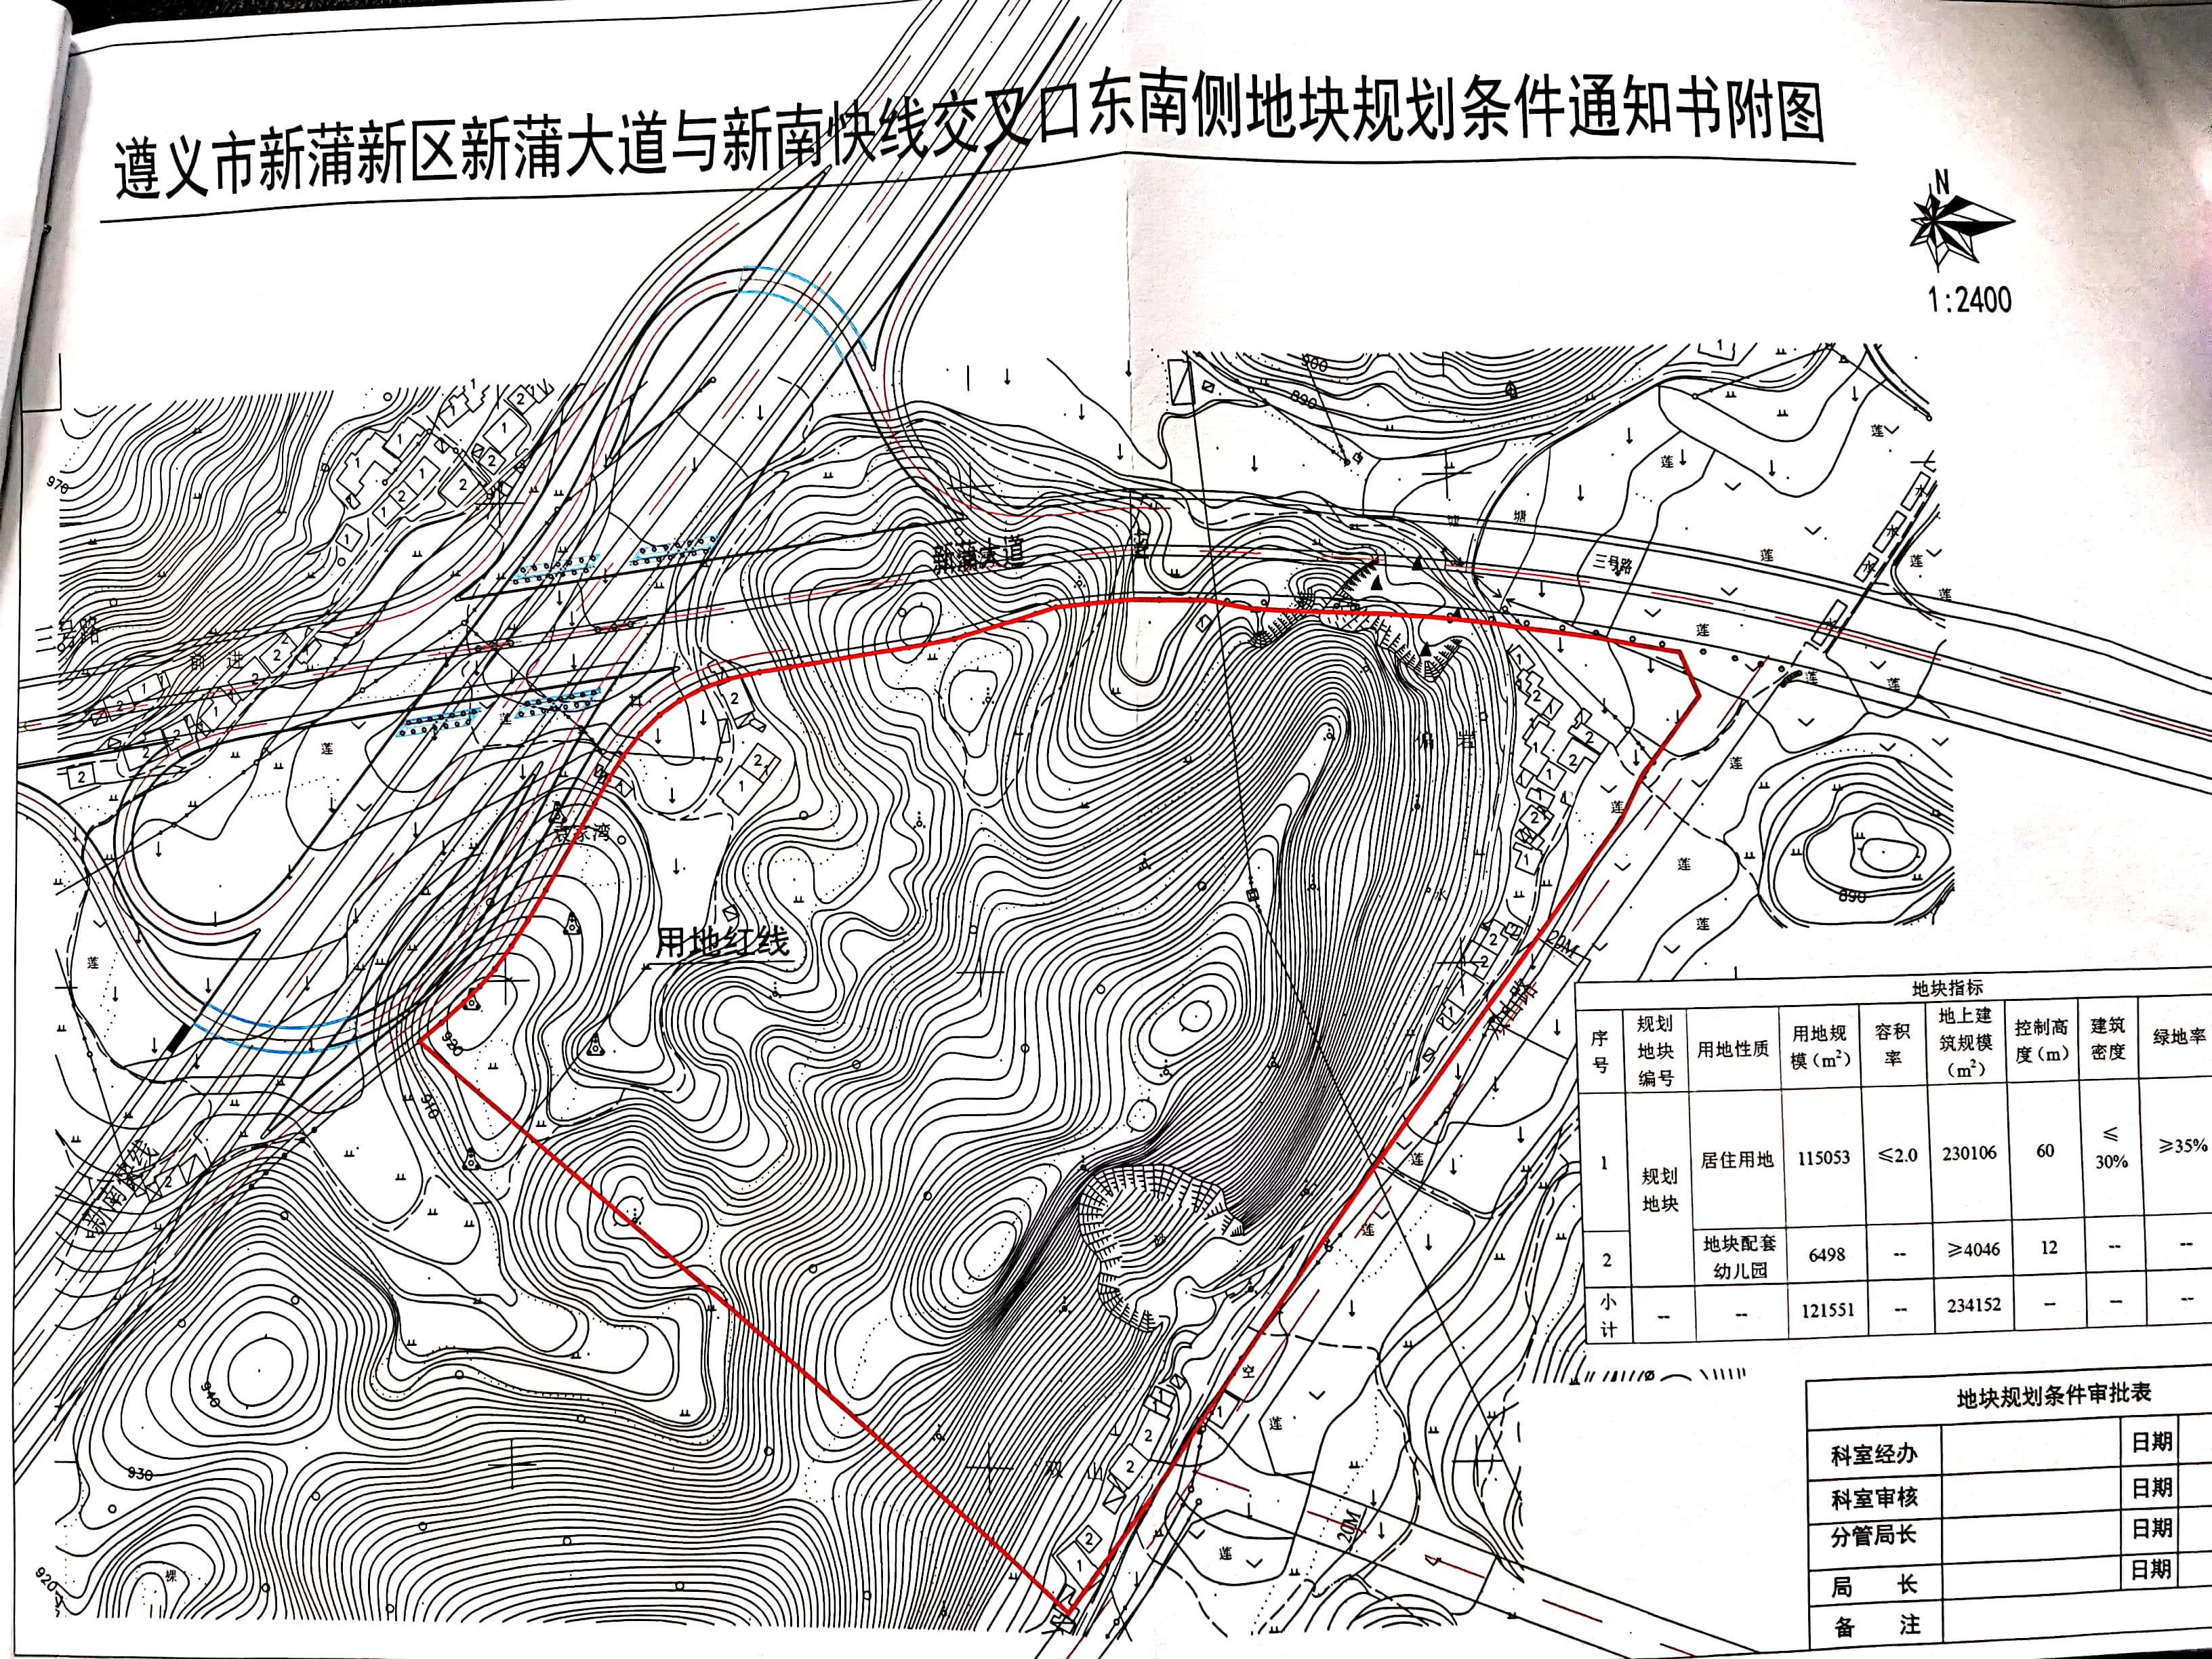 遵义新蒲新区地块挂牌出让 位于这几条路线东南侧（内容附图）-中国网地产